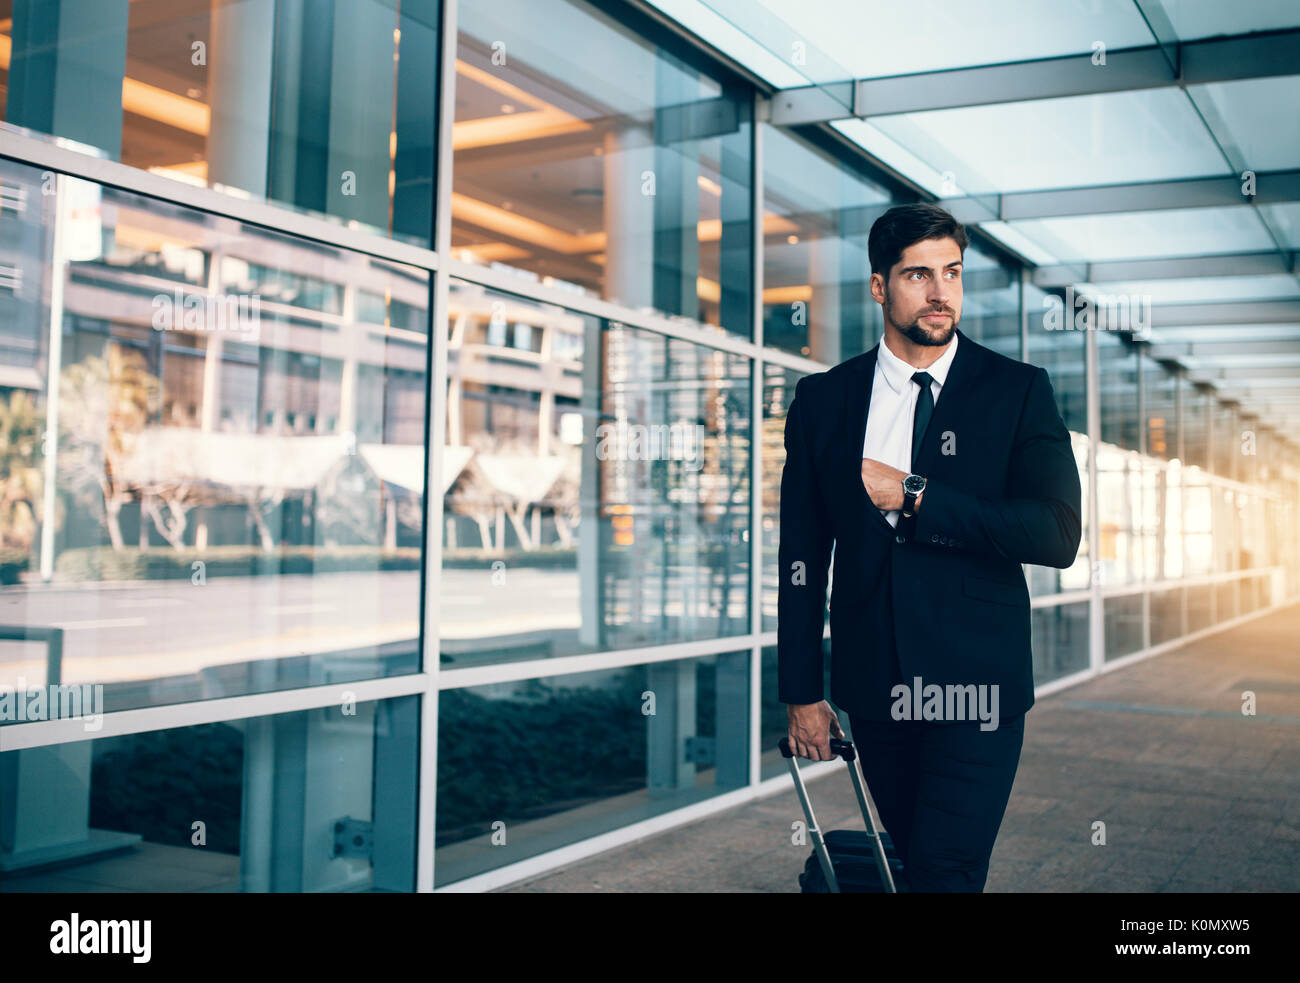 Empresario joven en viaje de negocios caminar con equipaje y mirando a otro lado. Ejecutivos de negocios, llevando la maleta en el aeropuerto. Foto de stock